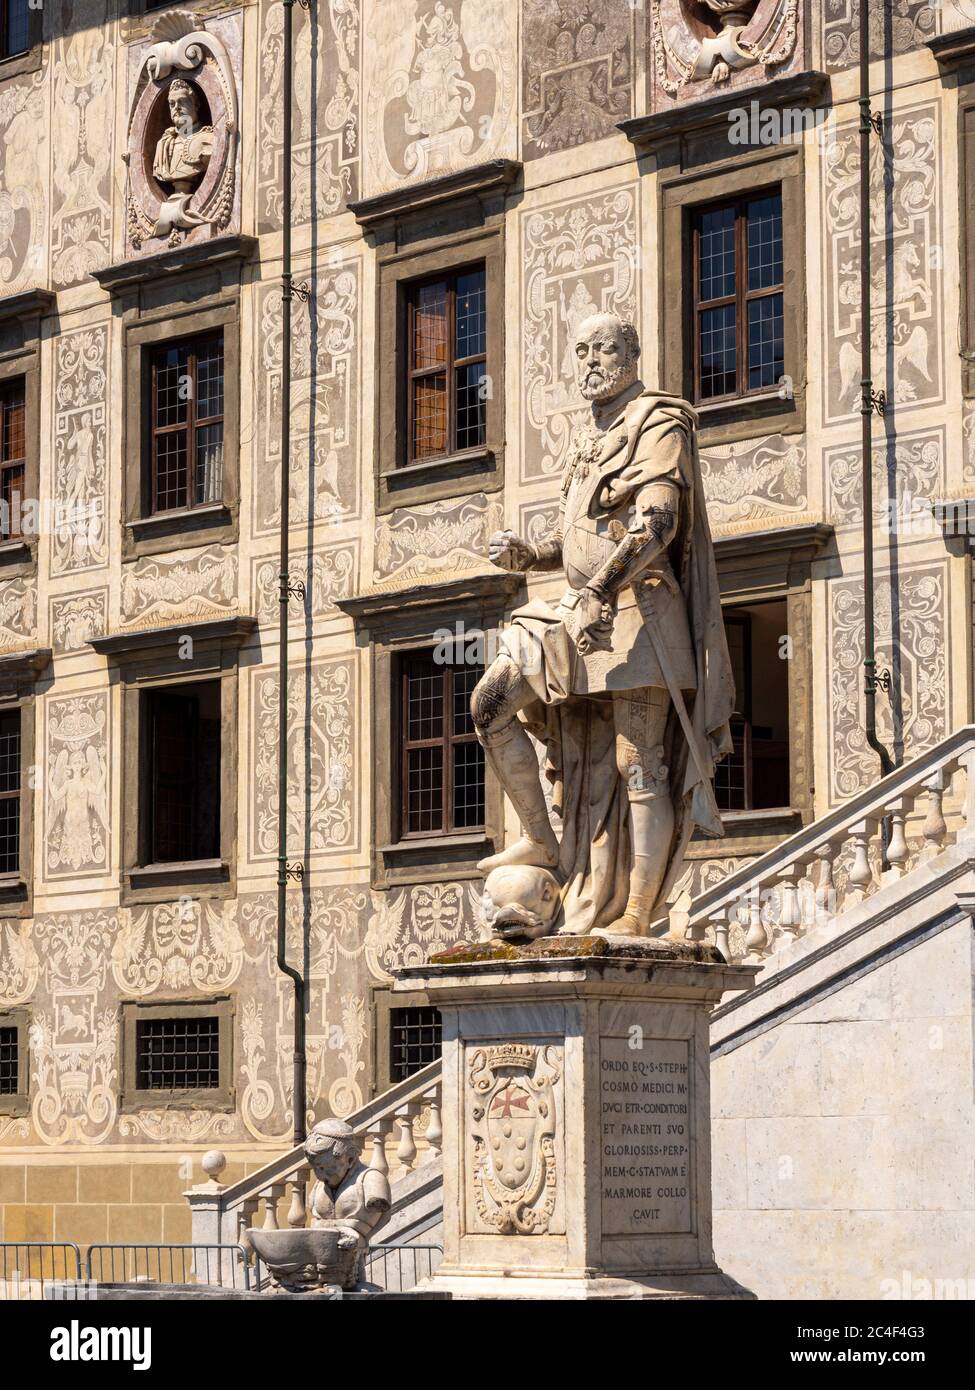 Palazzo della Carovana, with a statue of Cosimo I de' Medici.  Pisa, Italy. Stock Photo